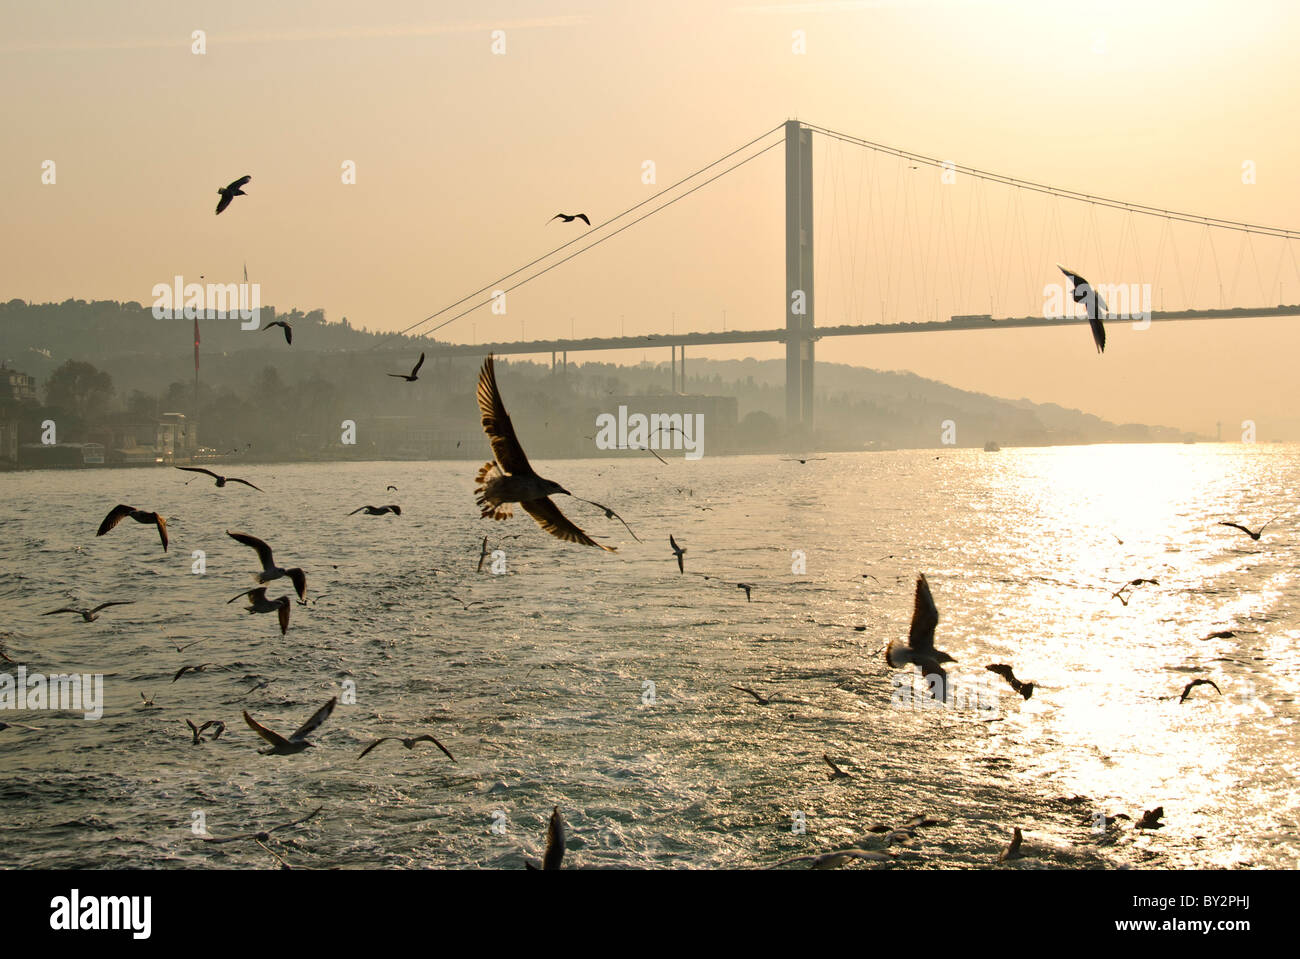 Eine Herde von Möwen fliegen über den Bosporus mit der Bosporus-Brücke im Hintergrund durch den Dunst und die untergehende Sonne. Die Bosporus-Brücke, auch genannt die erste Bosporus-Brücke (Türkisch: Boğaziçi Köprüsü oder Boğaziçi Köprüsü) ist eine der zwei Brücken in Istanbul, Türkei, überspannt den Bosporus und verbindet Europa und Asien. Die Küste in diesem Bild sichtbar ist der Beylerbeyi Stadtteil auf der asiatischen Seite. Stockfoto